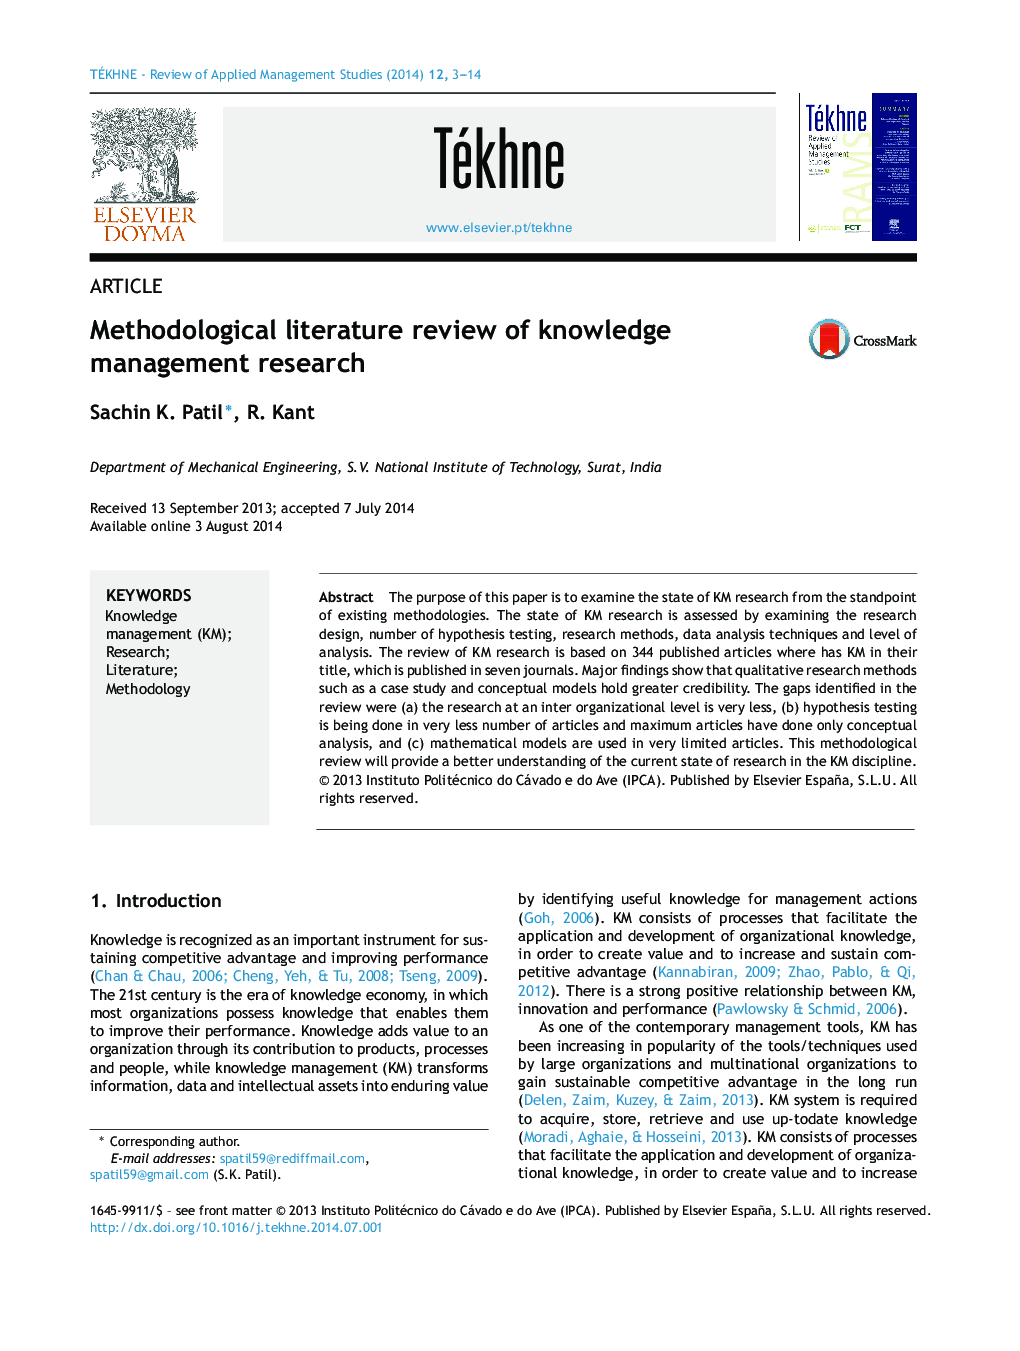 مطالعه ی روش شناختی پیشینه ی تحقیقات در زمینه ی مدیریت دانش